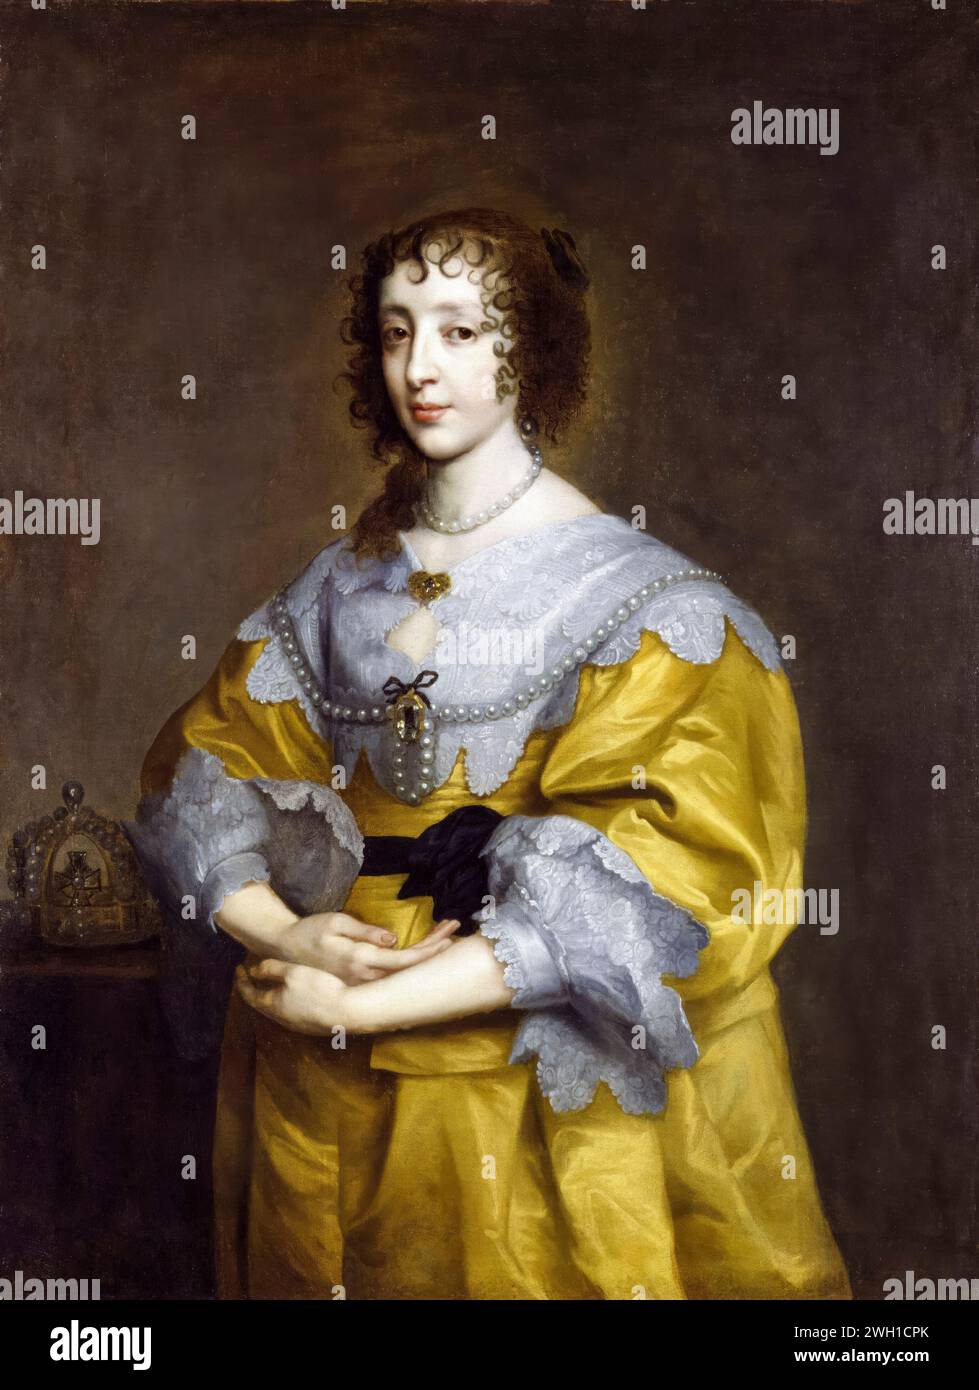 Eine schwangere Königin Henrietta Maria (1609–1669), Königin Gemahlin und Ehefrau von Karl I. von England, Schottland und Irland, Porträtmalerei in Öl auf Leinwand nach Sir Anthony van Dyck, 1632-1635 Stockfoto